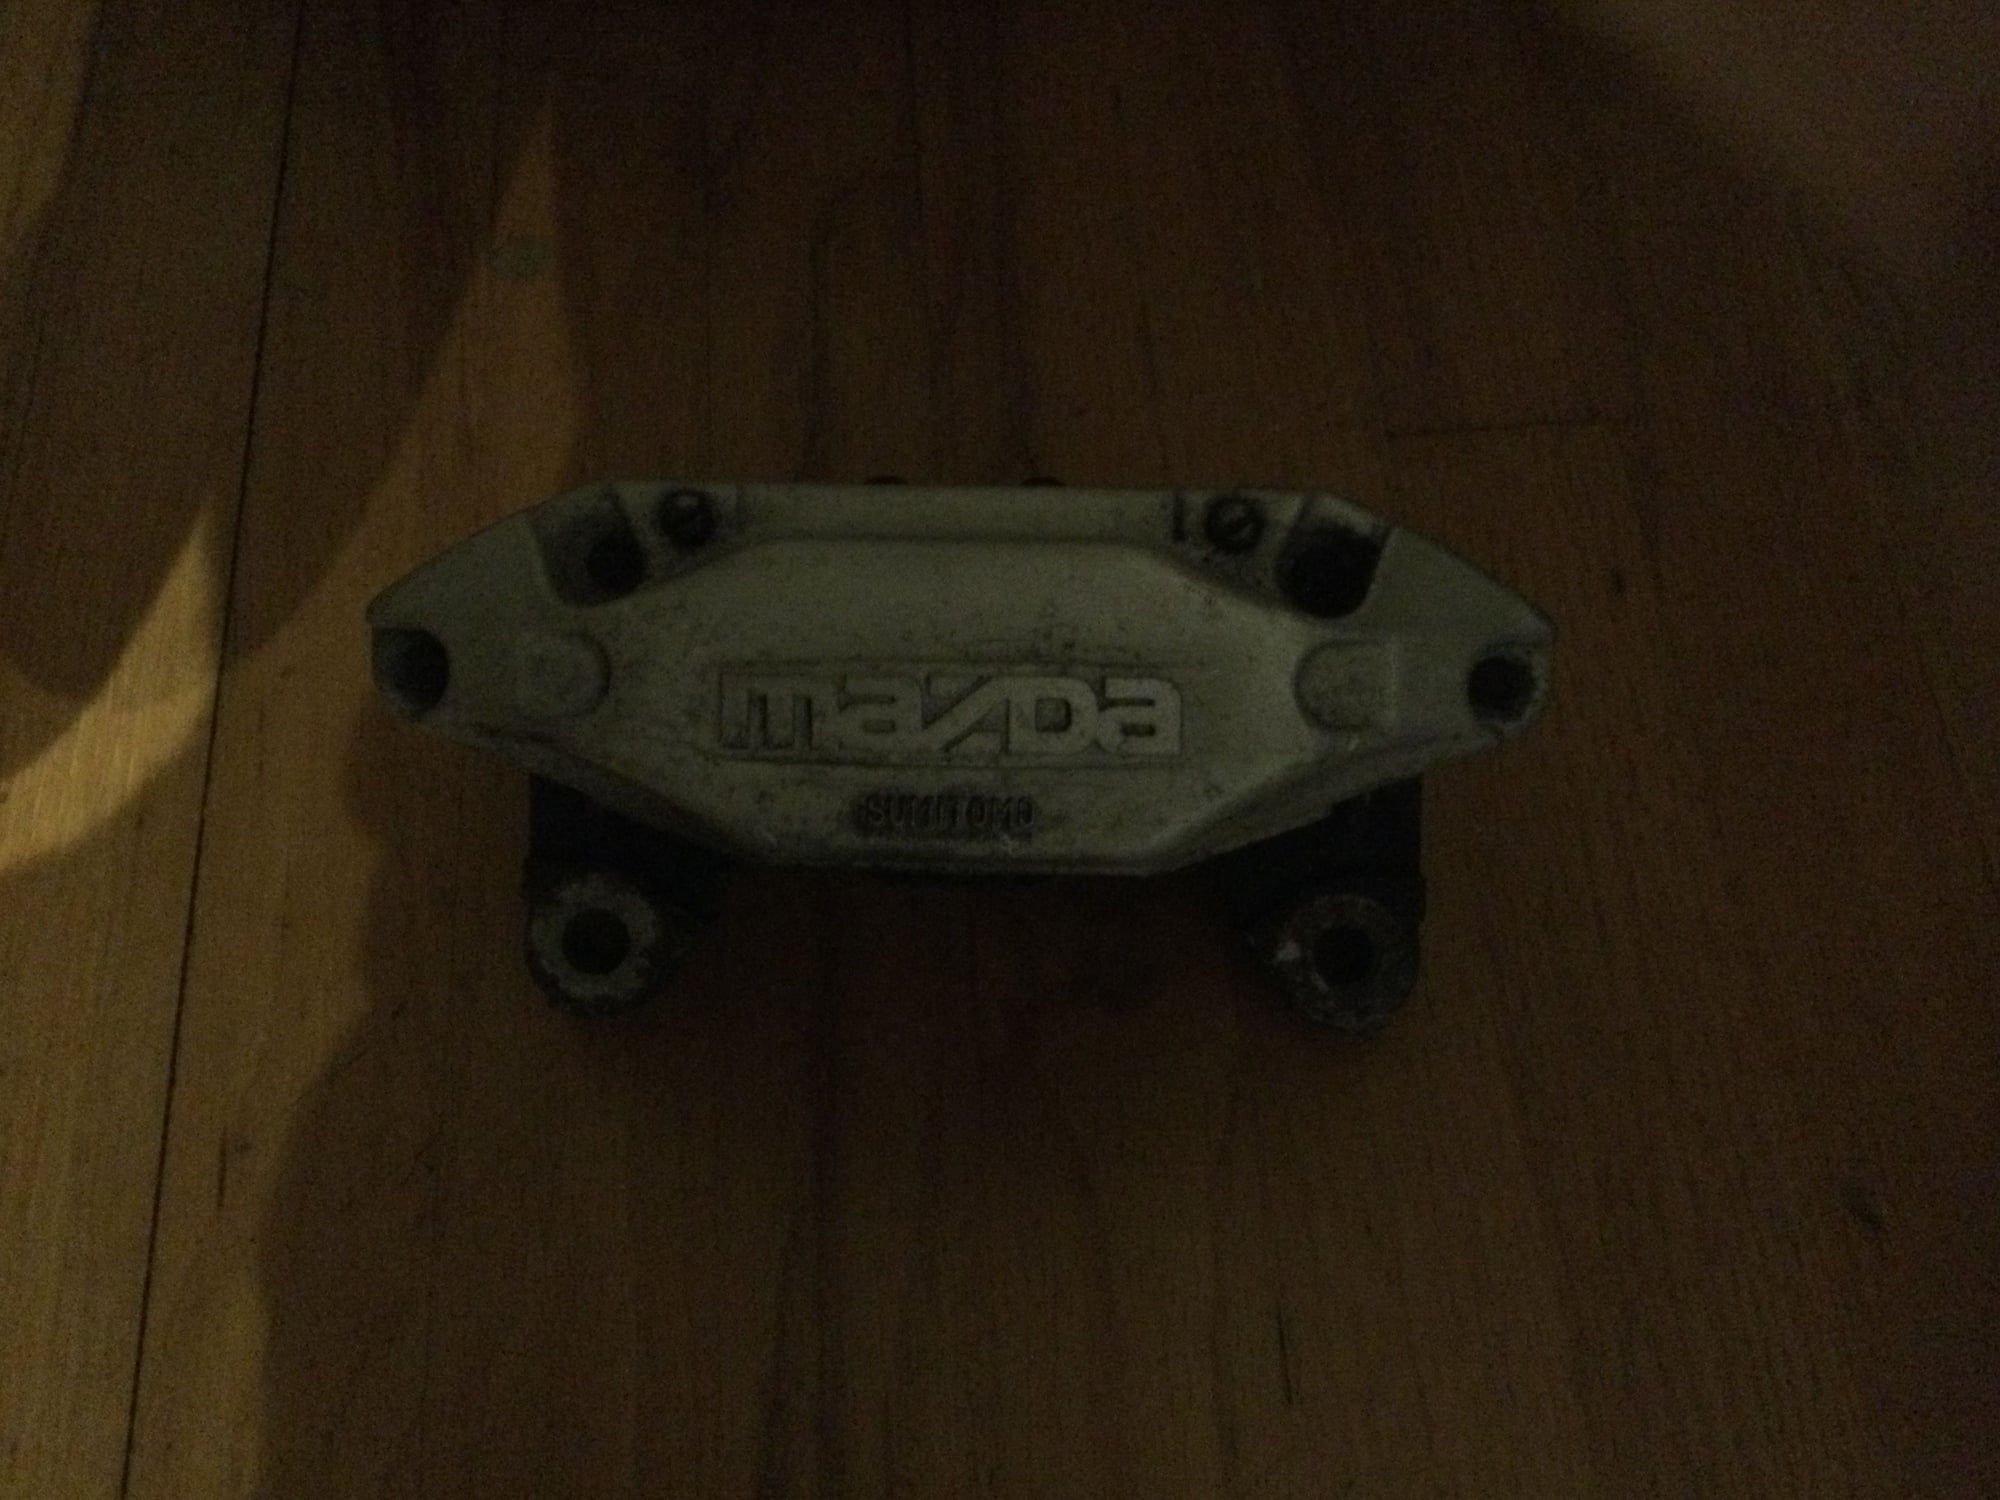 1993 Mazda RX-7 - FD front brake caliper - Accessories - $90 - Hartford, CT 06114, United States